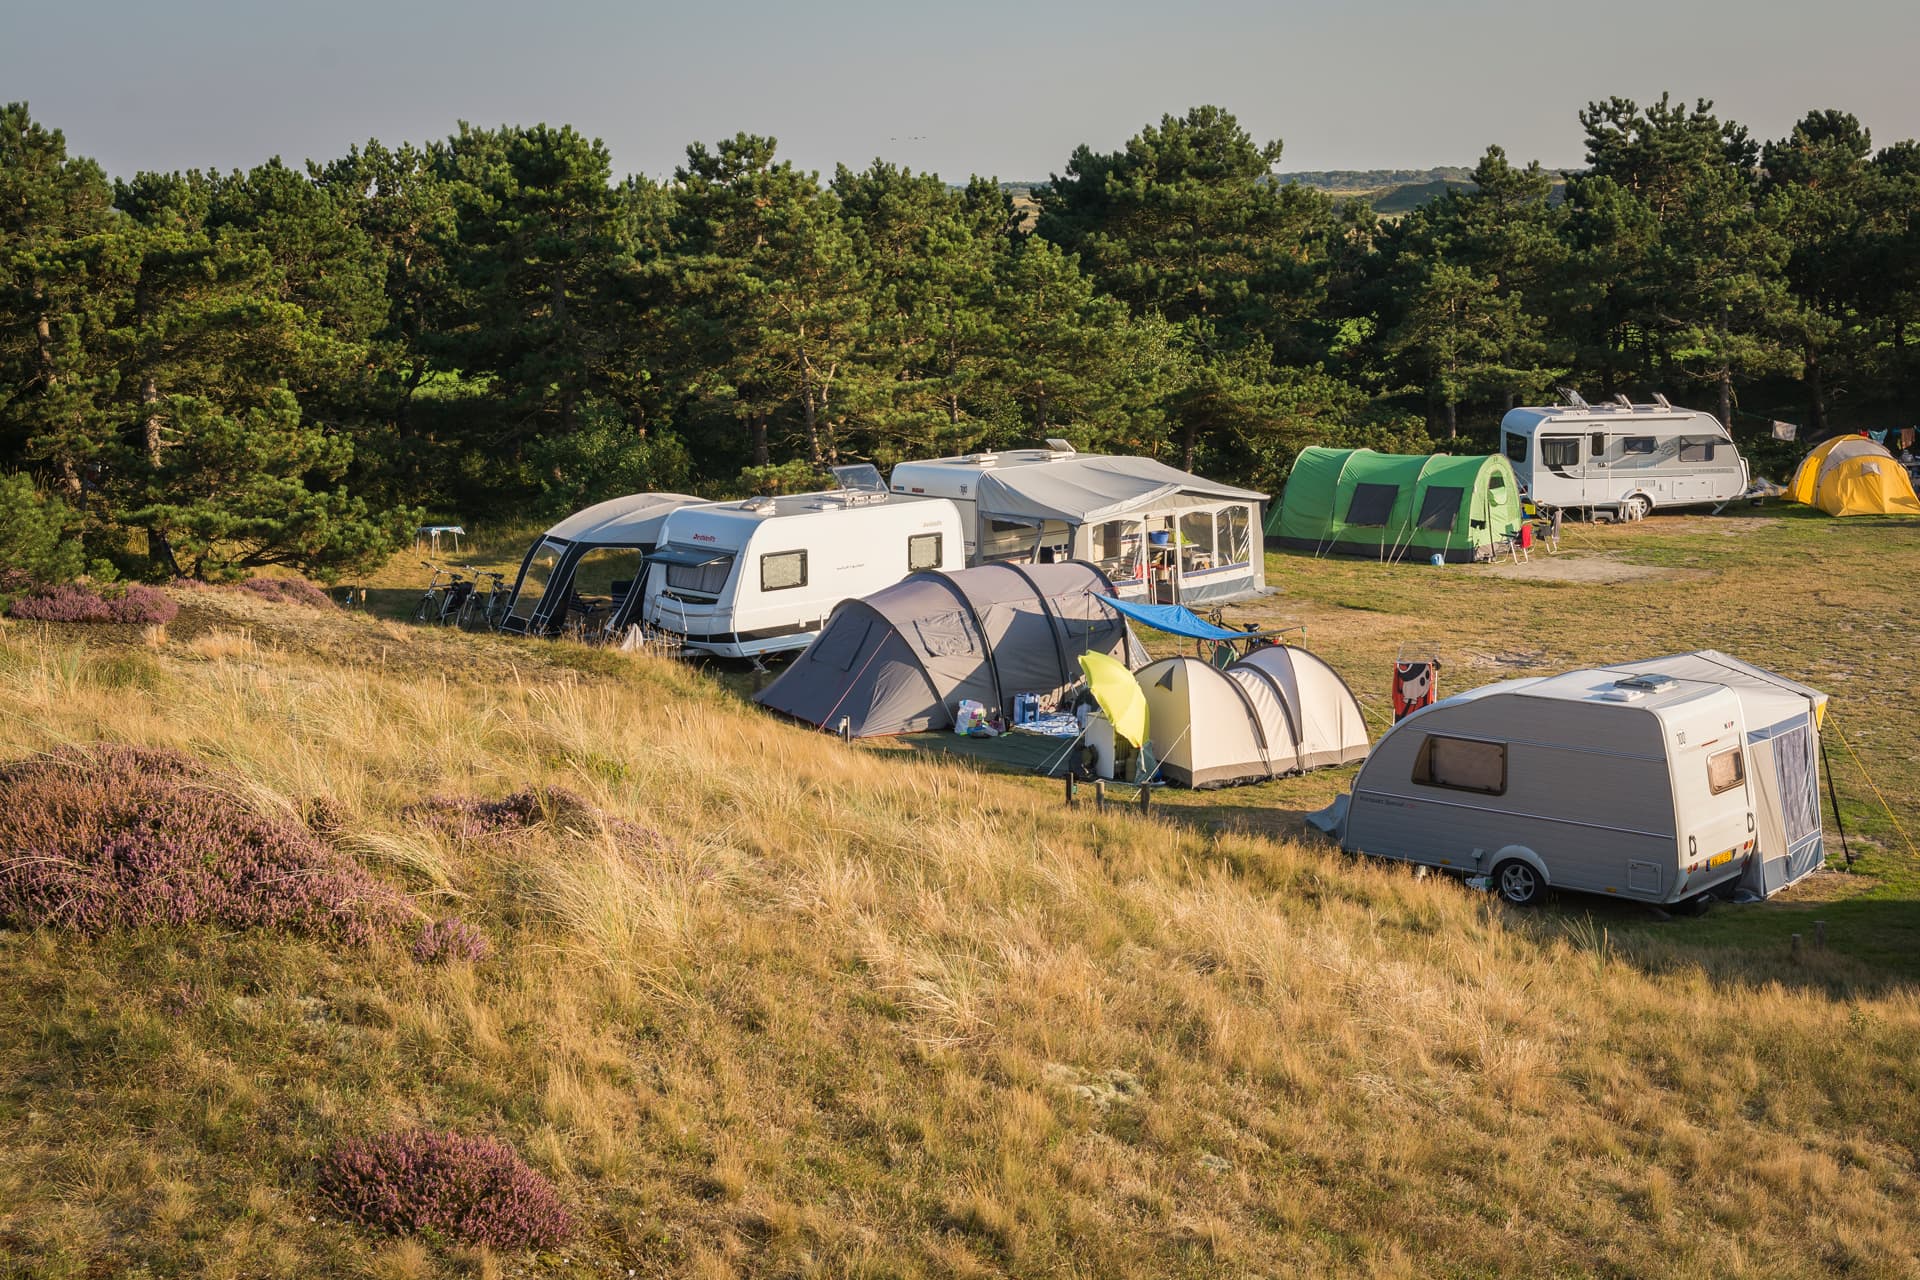 Camping Loodsmansduin, kamperen in de duinen